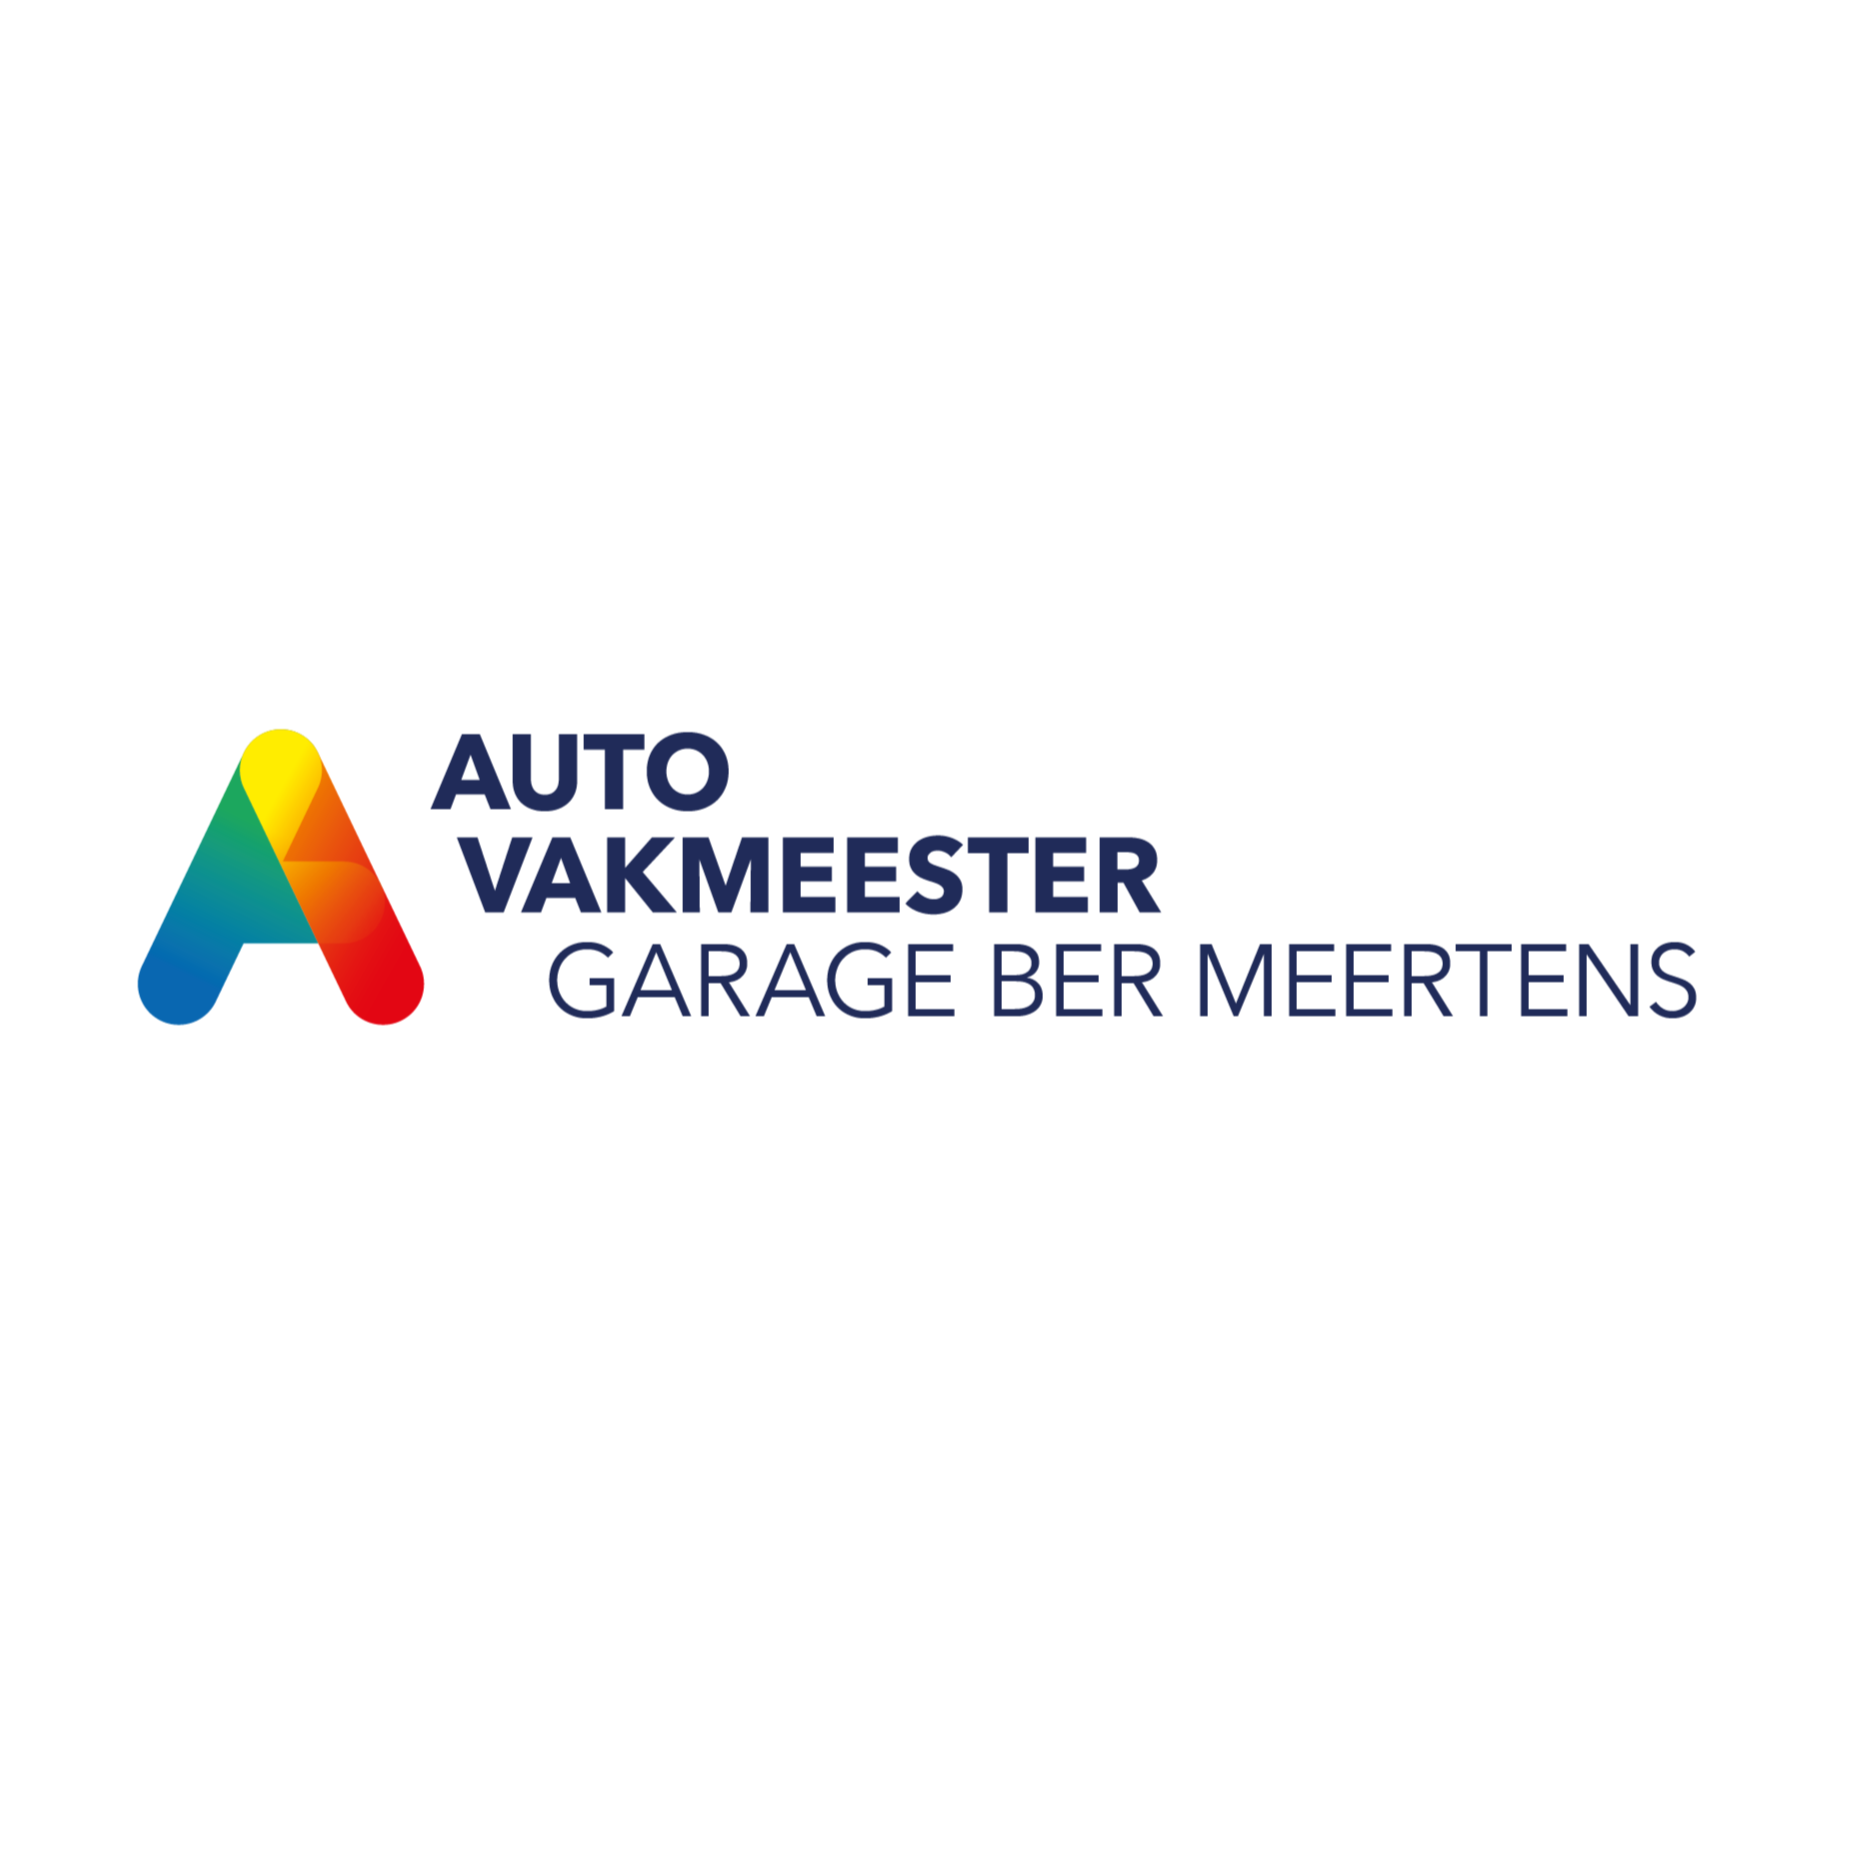 Autovakmeester garage Ber Meertens Logo